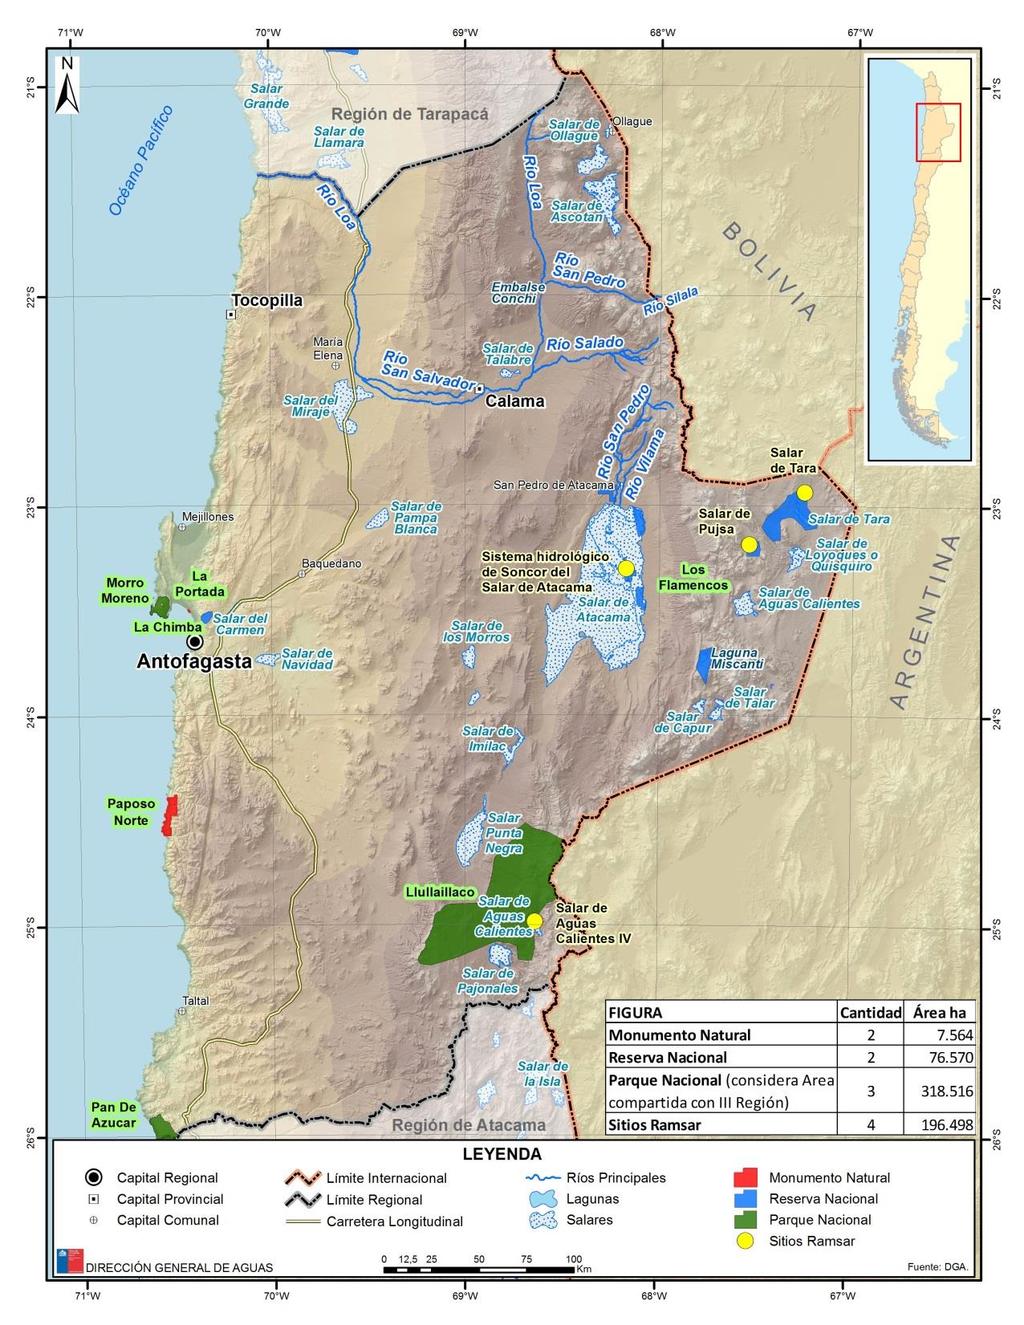 Región de Antofagasta: SNASPE (Sistema Nacional de áreas Silvestres protegidas del Estado) - Monumentos Naturales, - Reservas -